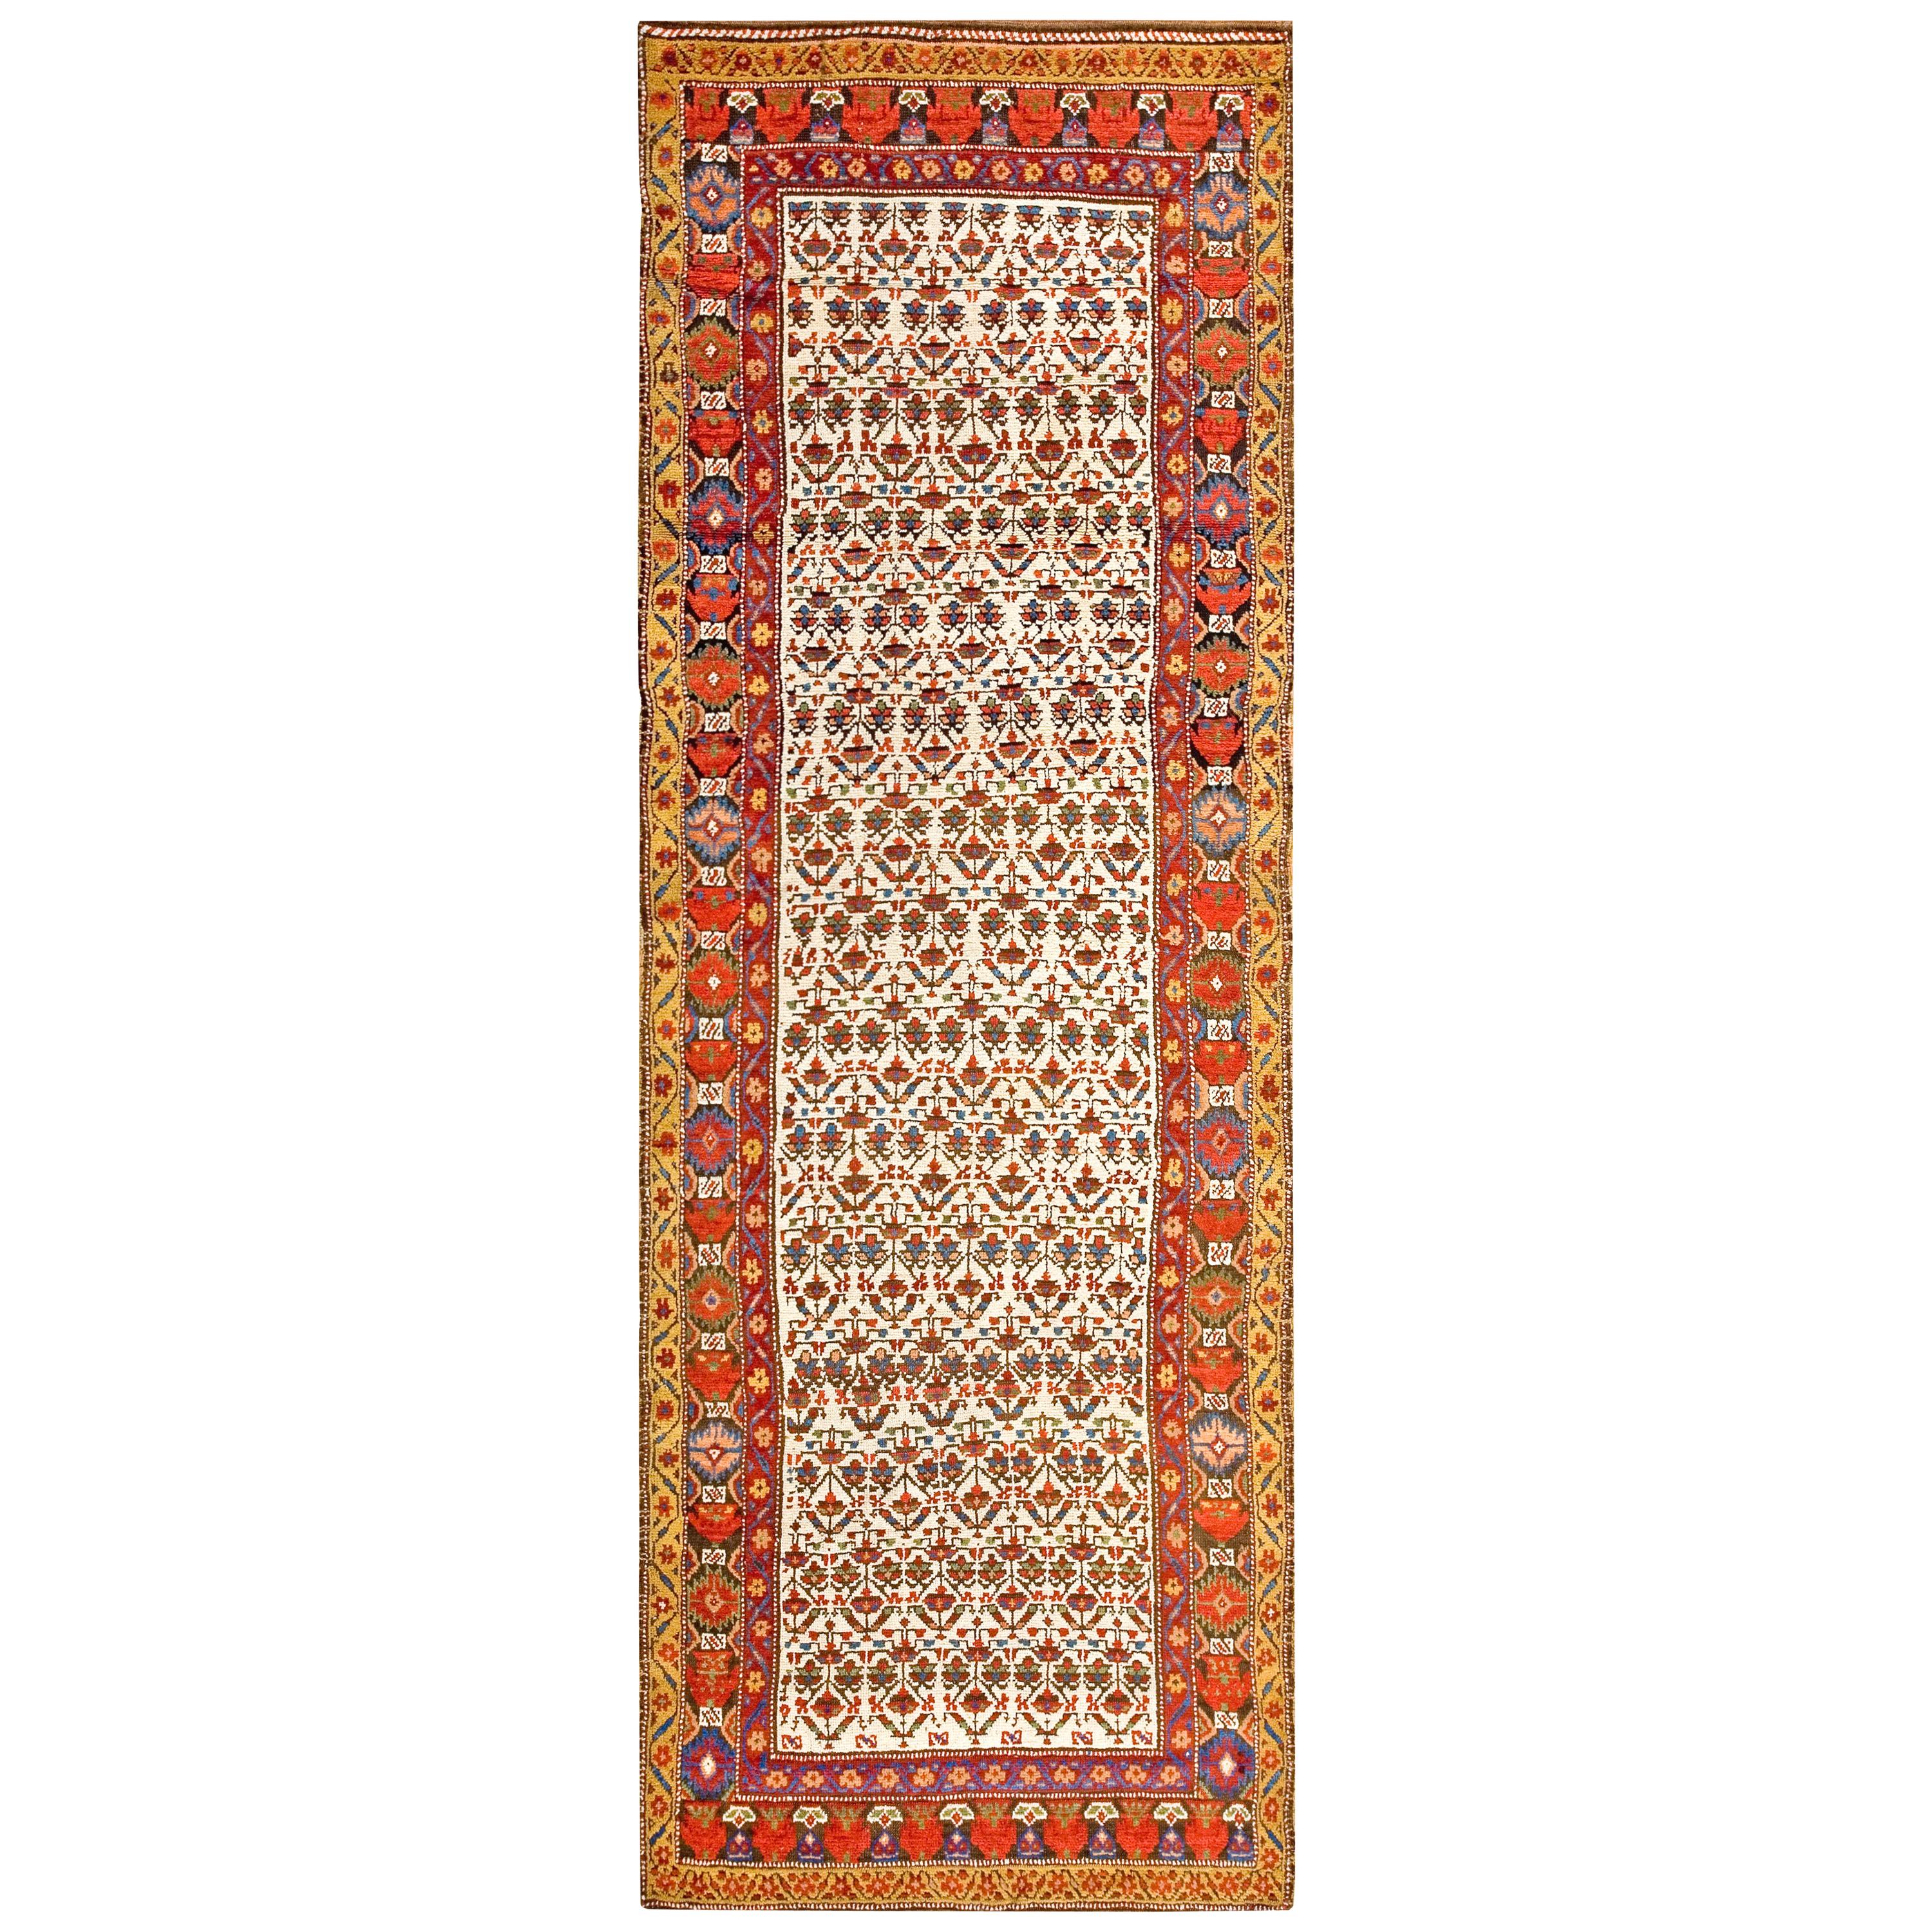 Mid 19th Century Persian Kurdish Carpet ( 3'6" x 10'6" - 107 x 320 )